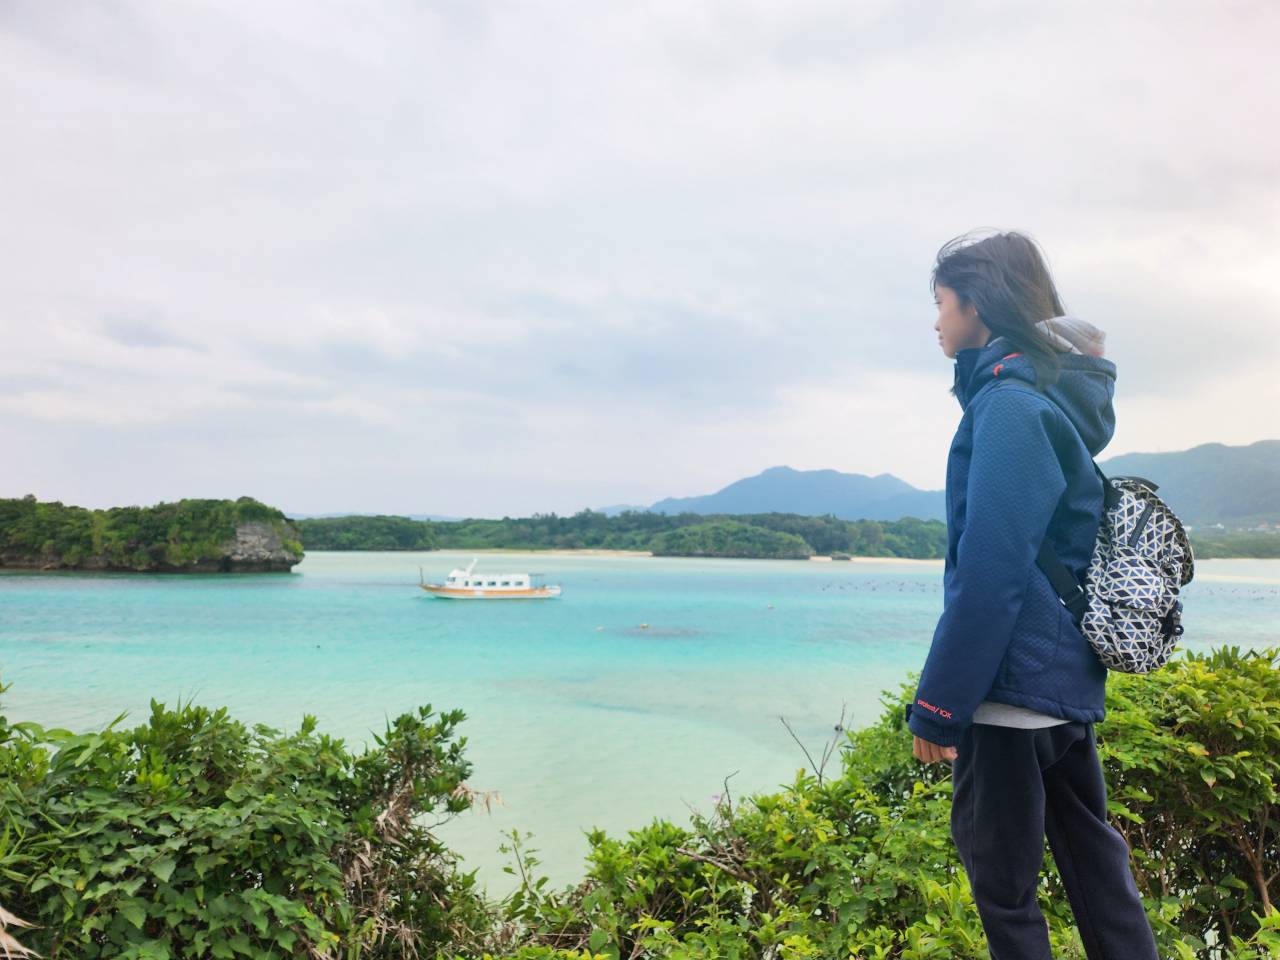 日本沖繩石垣島 川平灣。享受果凍般透明海水、寧靜優美的海灣風景，搭乘玻璃底船觀察海中珊瑚礁和生態。